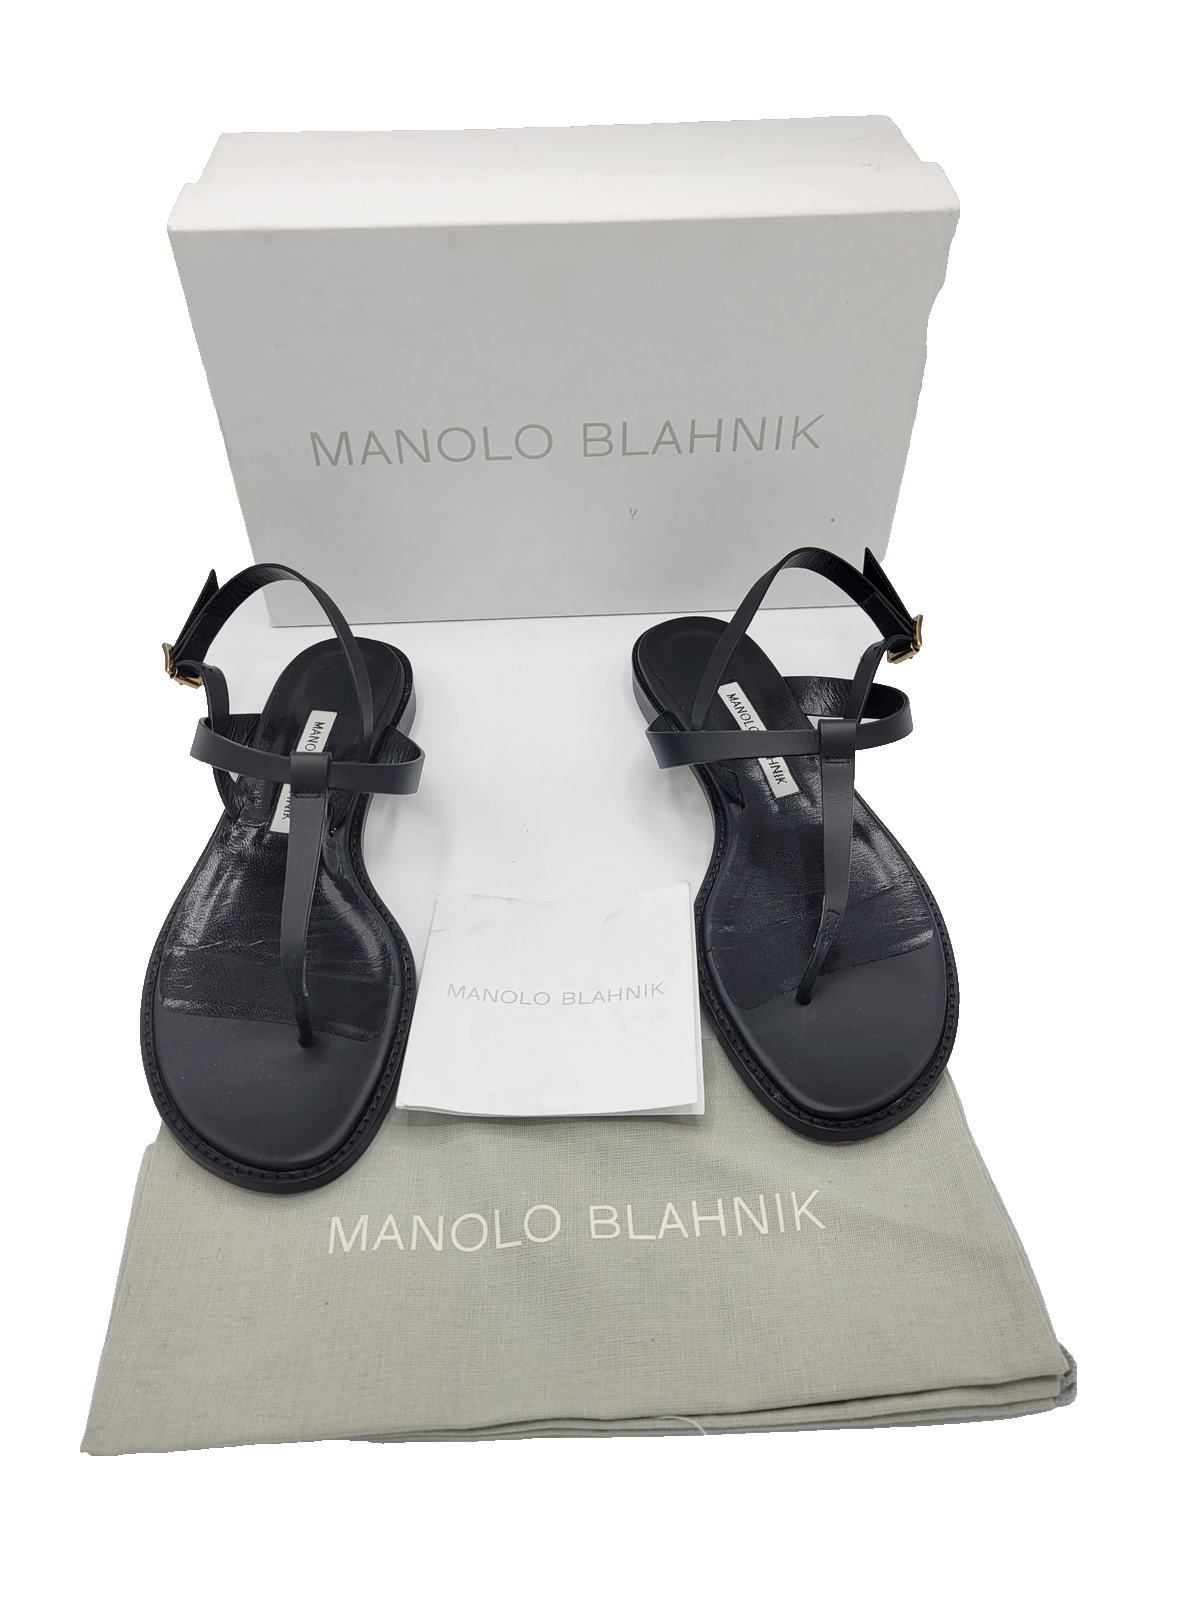 Manolo Blahnik Hata Sandal in Black - Women's Size 39